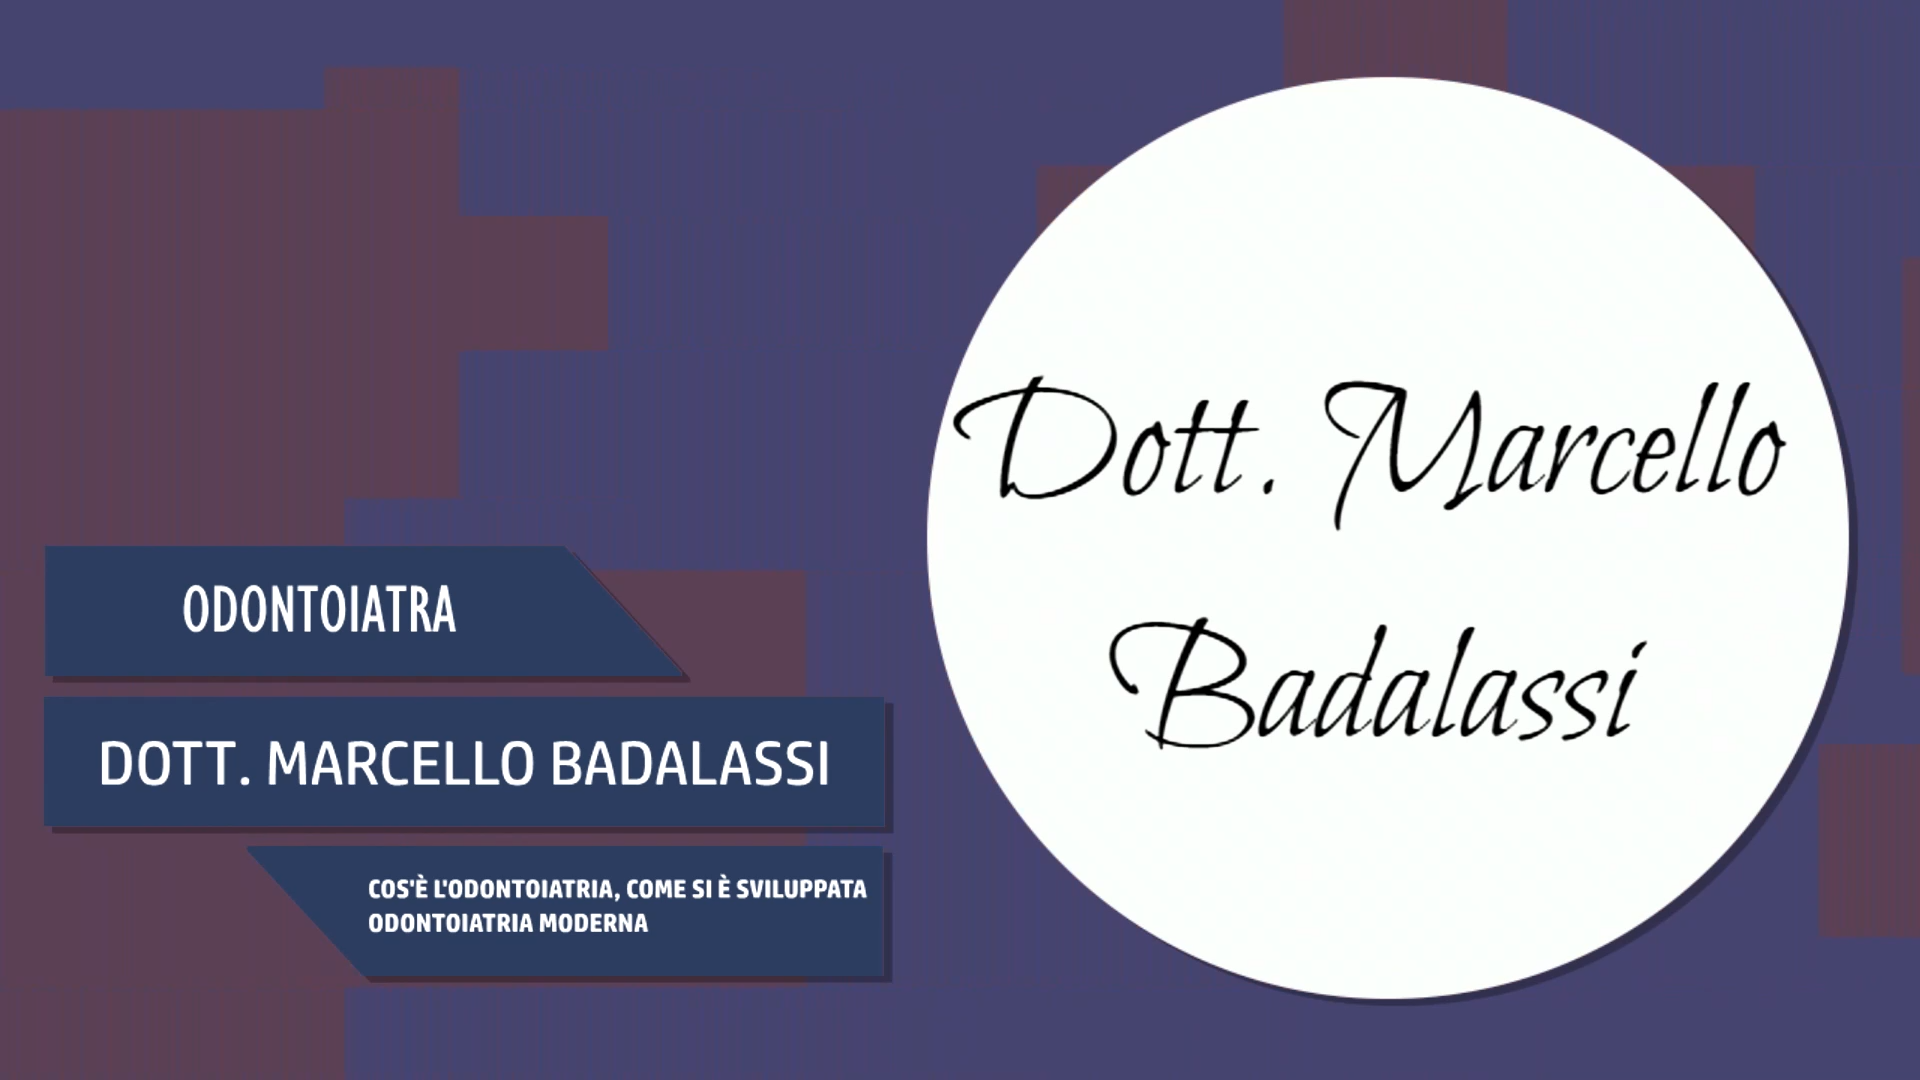 Intervista al Dott. Marcello Badalassi – Cos’è l’odontoiatria a carico immediato